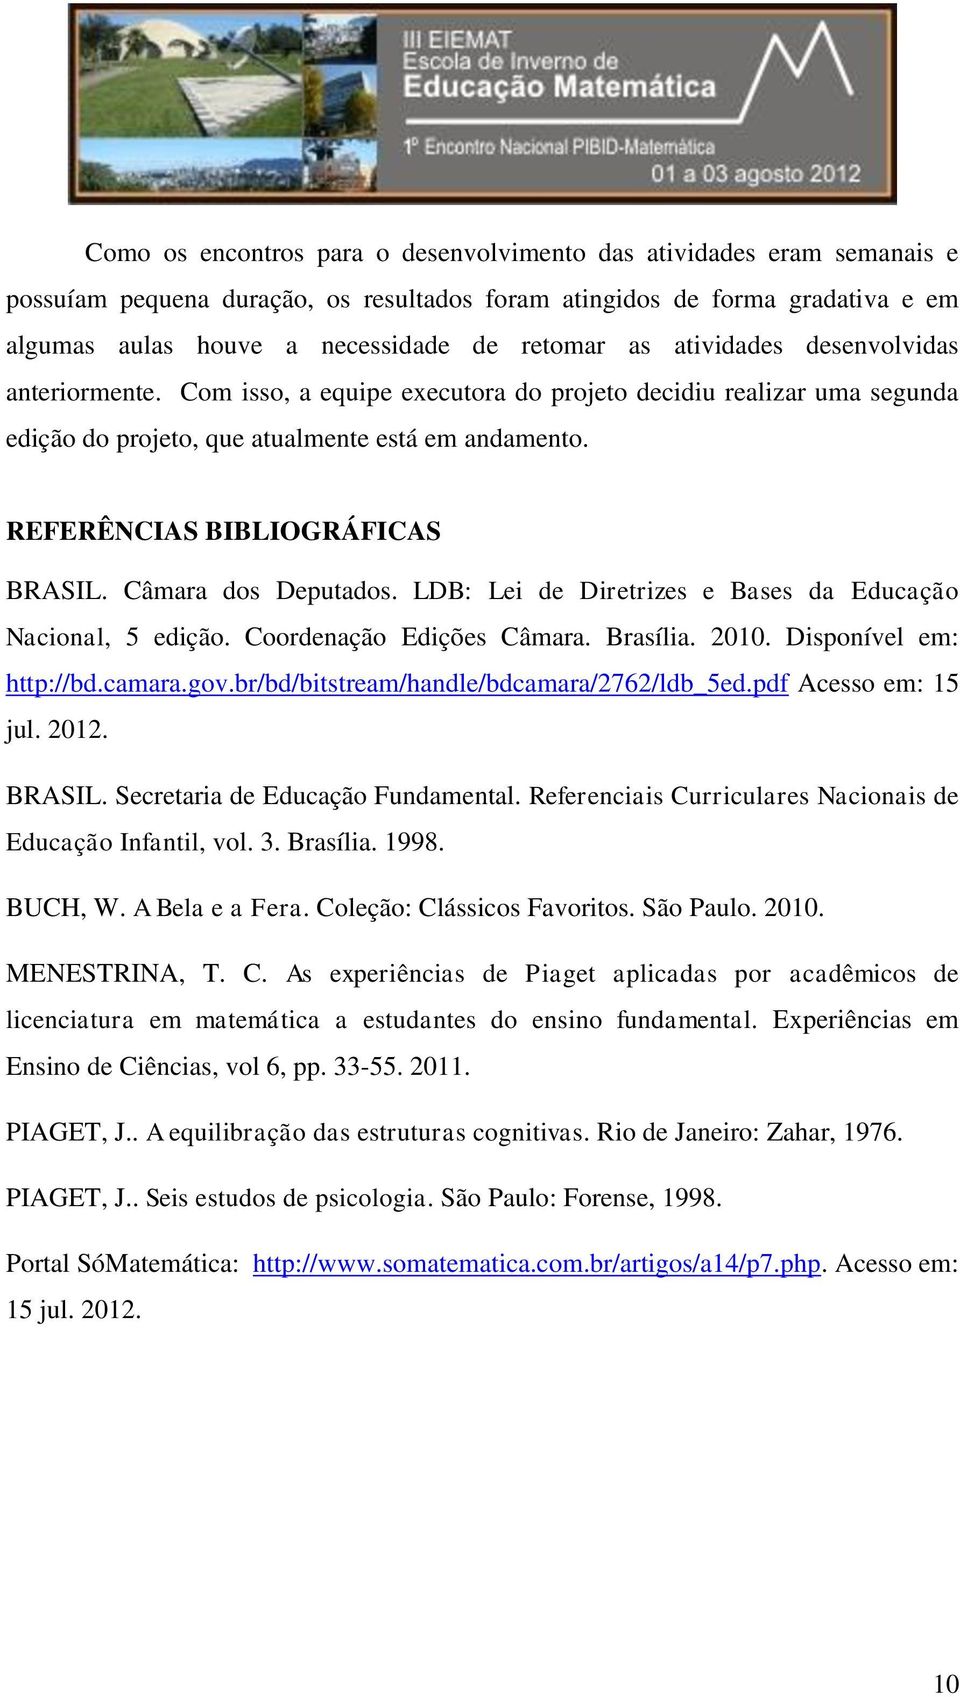 Câmara dos Deputados. LDB: Lei de Diretrizes e Bases da Educação Nacional, 5 edição. Coordenação Edições Câmara. Brasília. 2010. Disponível em: http://bd.camara.gov.